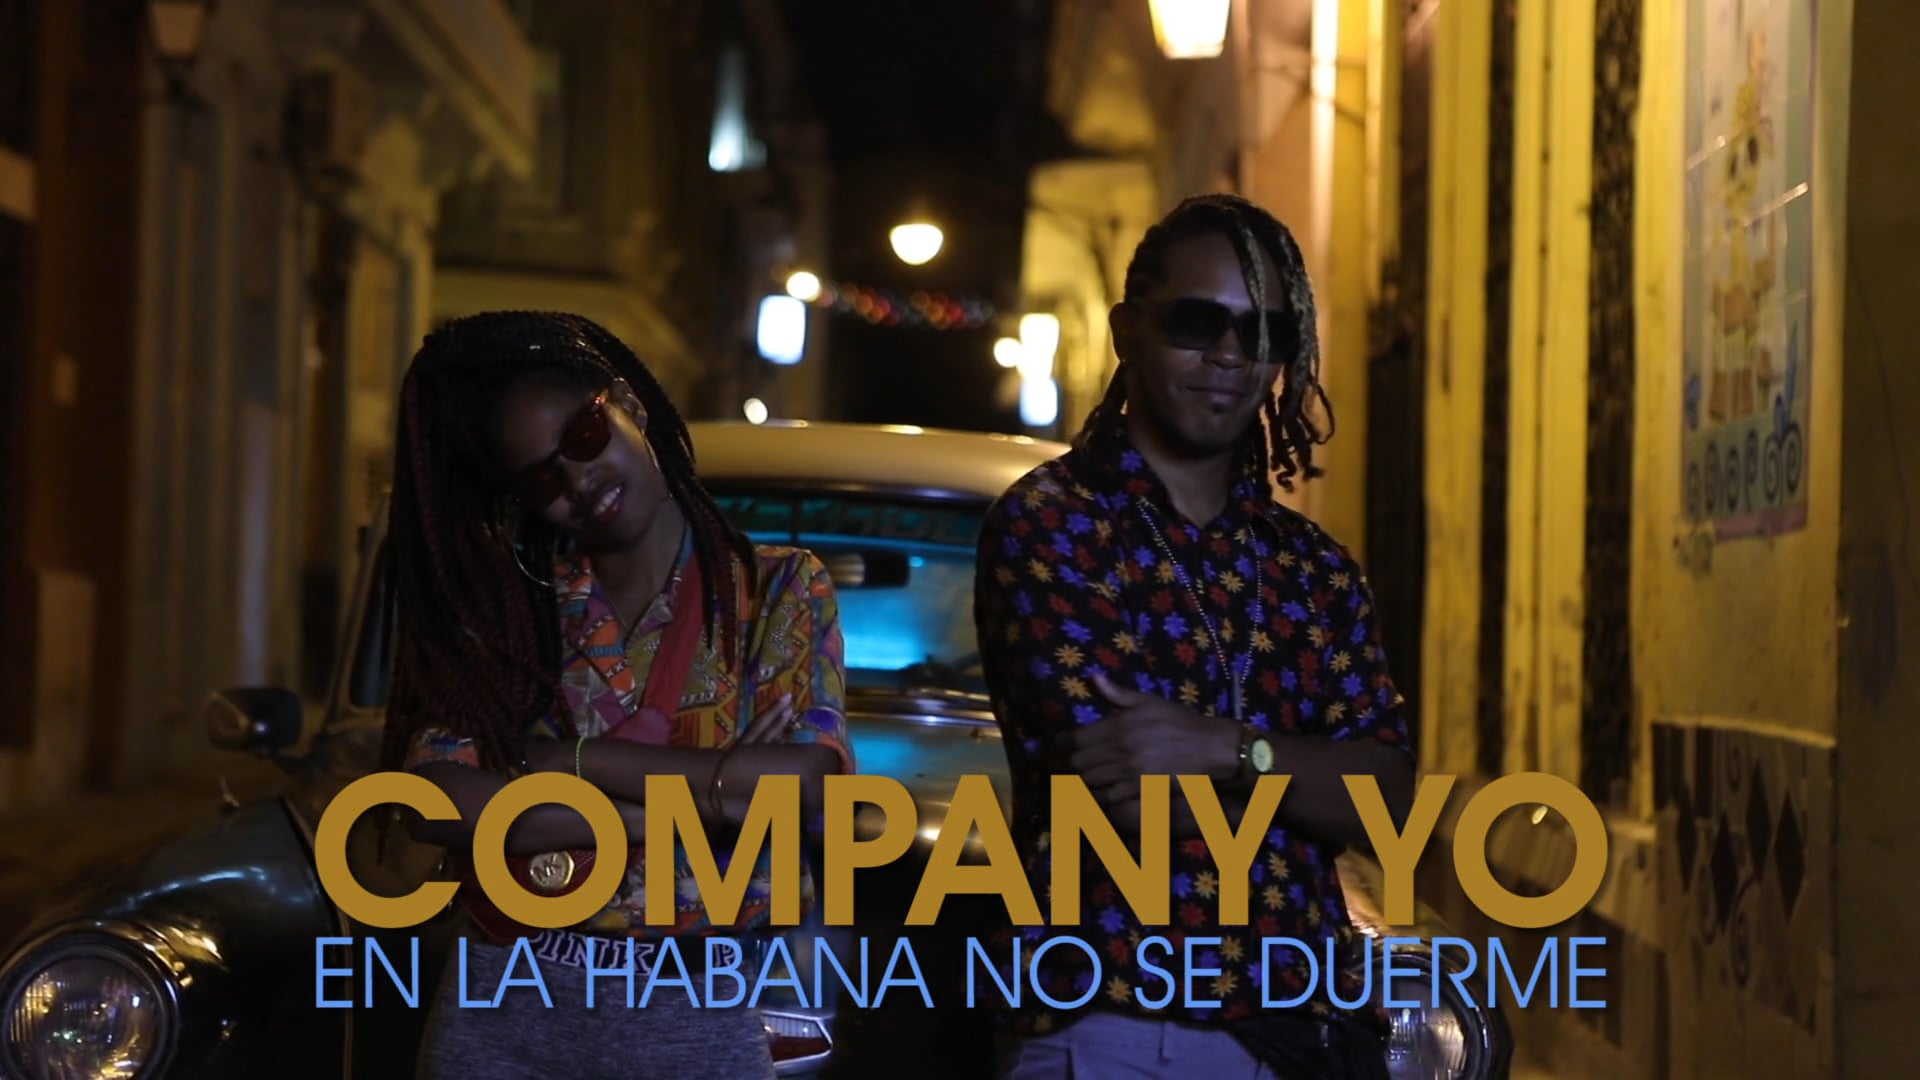 Company Yo - En La Habana no se duerme